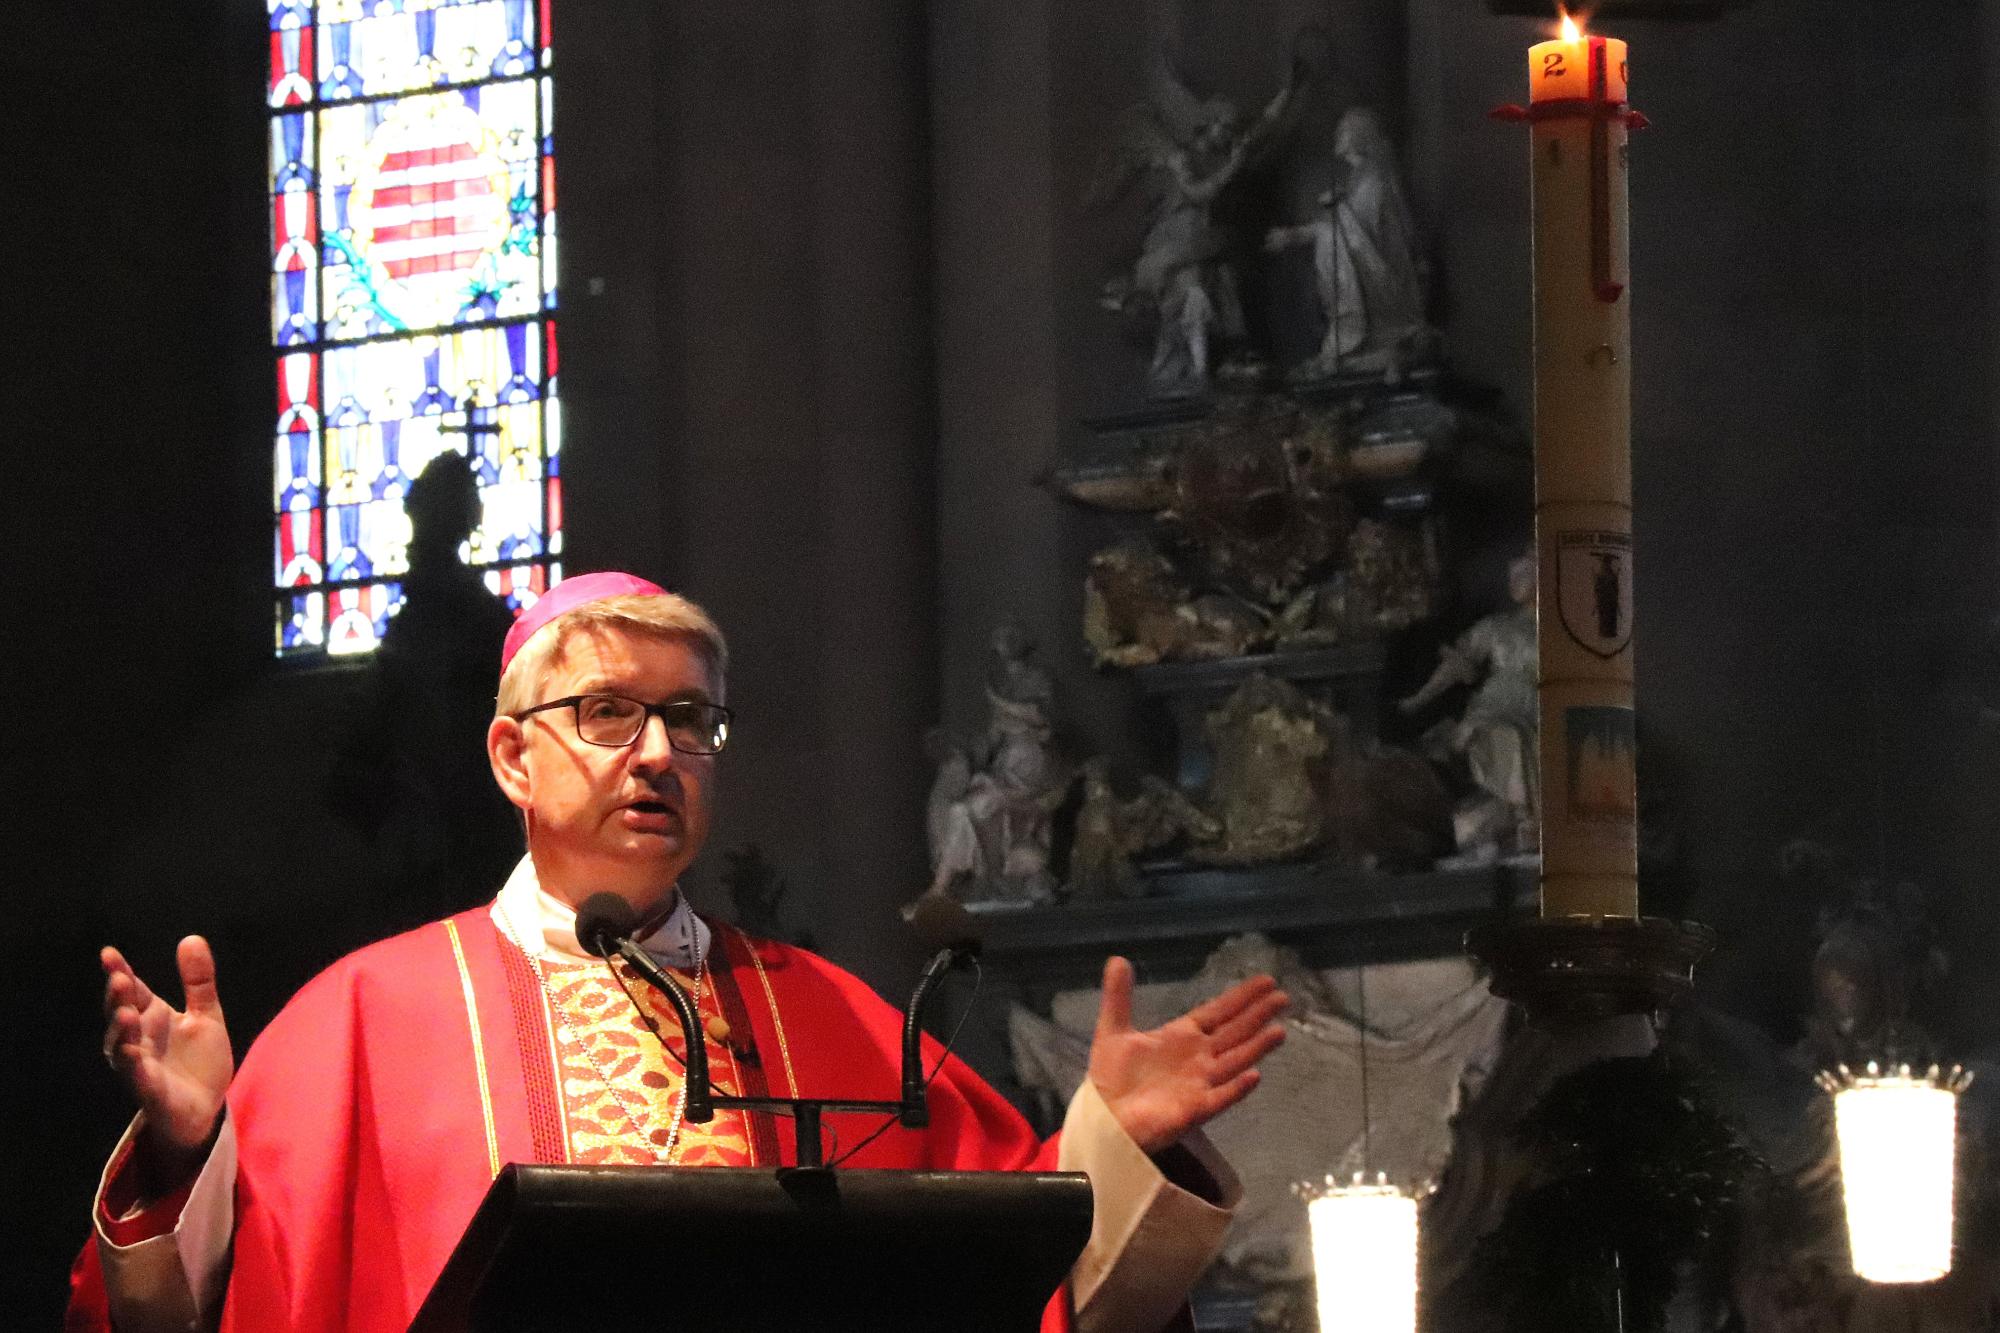 Mainz, 9.6.2019: Bischof Peter Kohlgraf rief dazu auf, für den Pastoralen Weg die Türen aufzumachen und aufzubrechen.